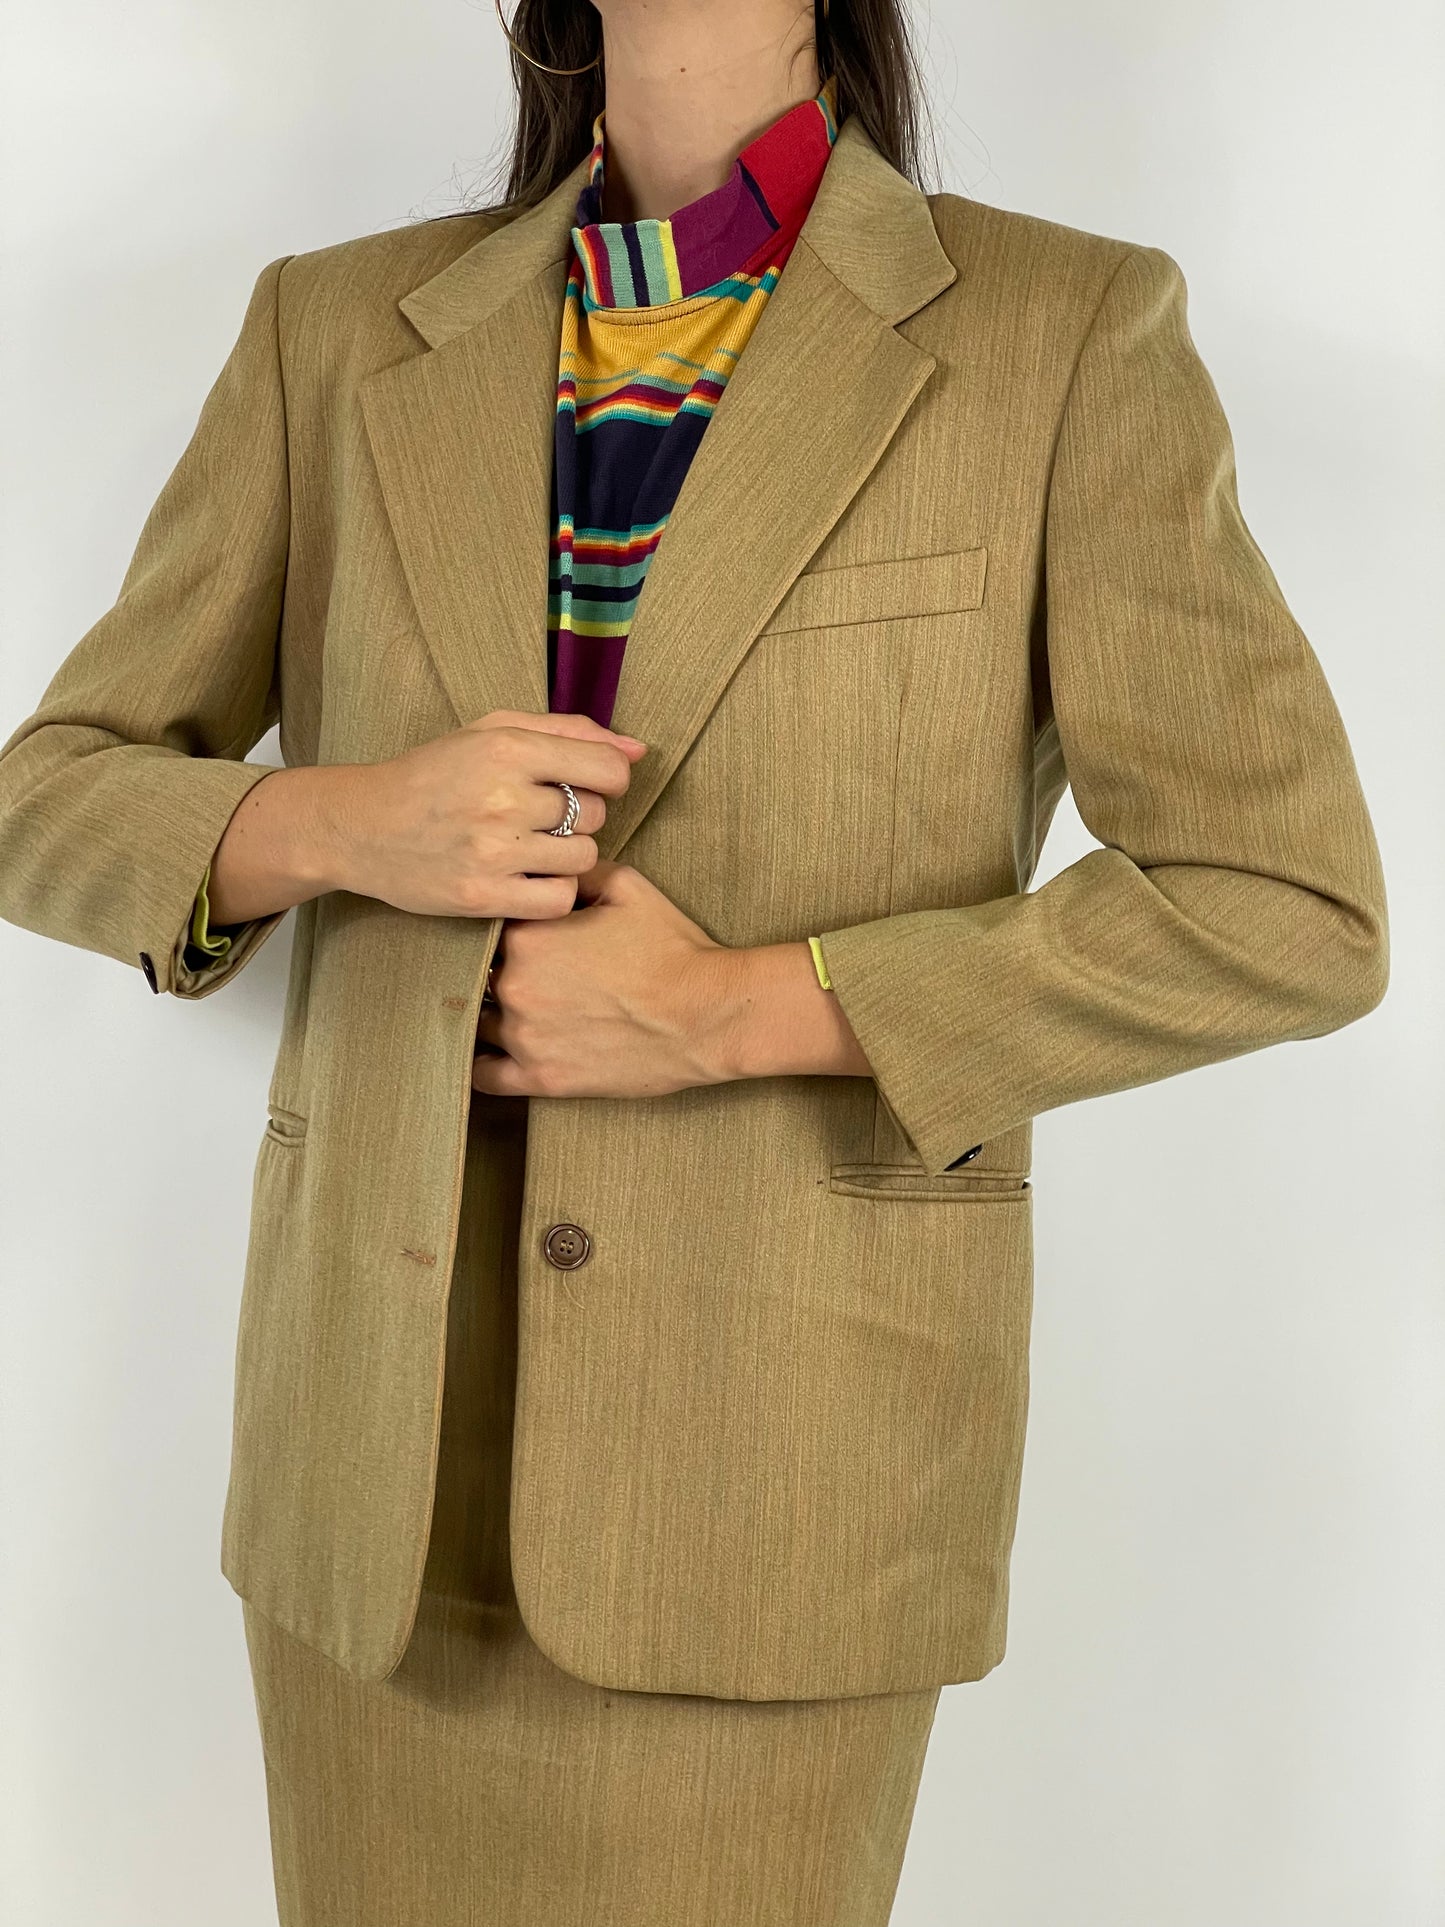 1970s suit